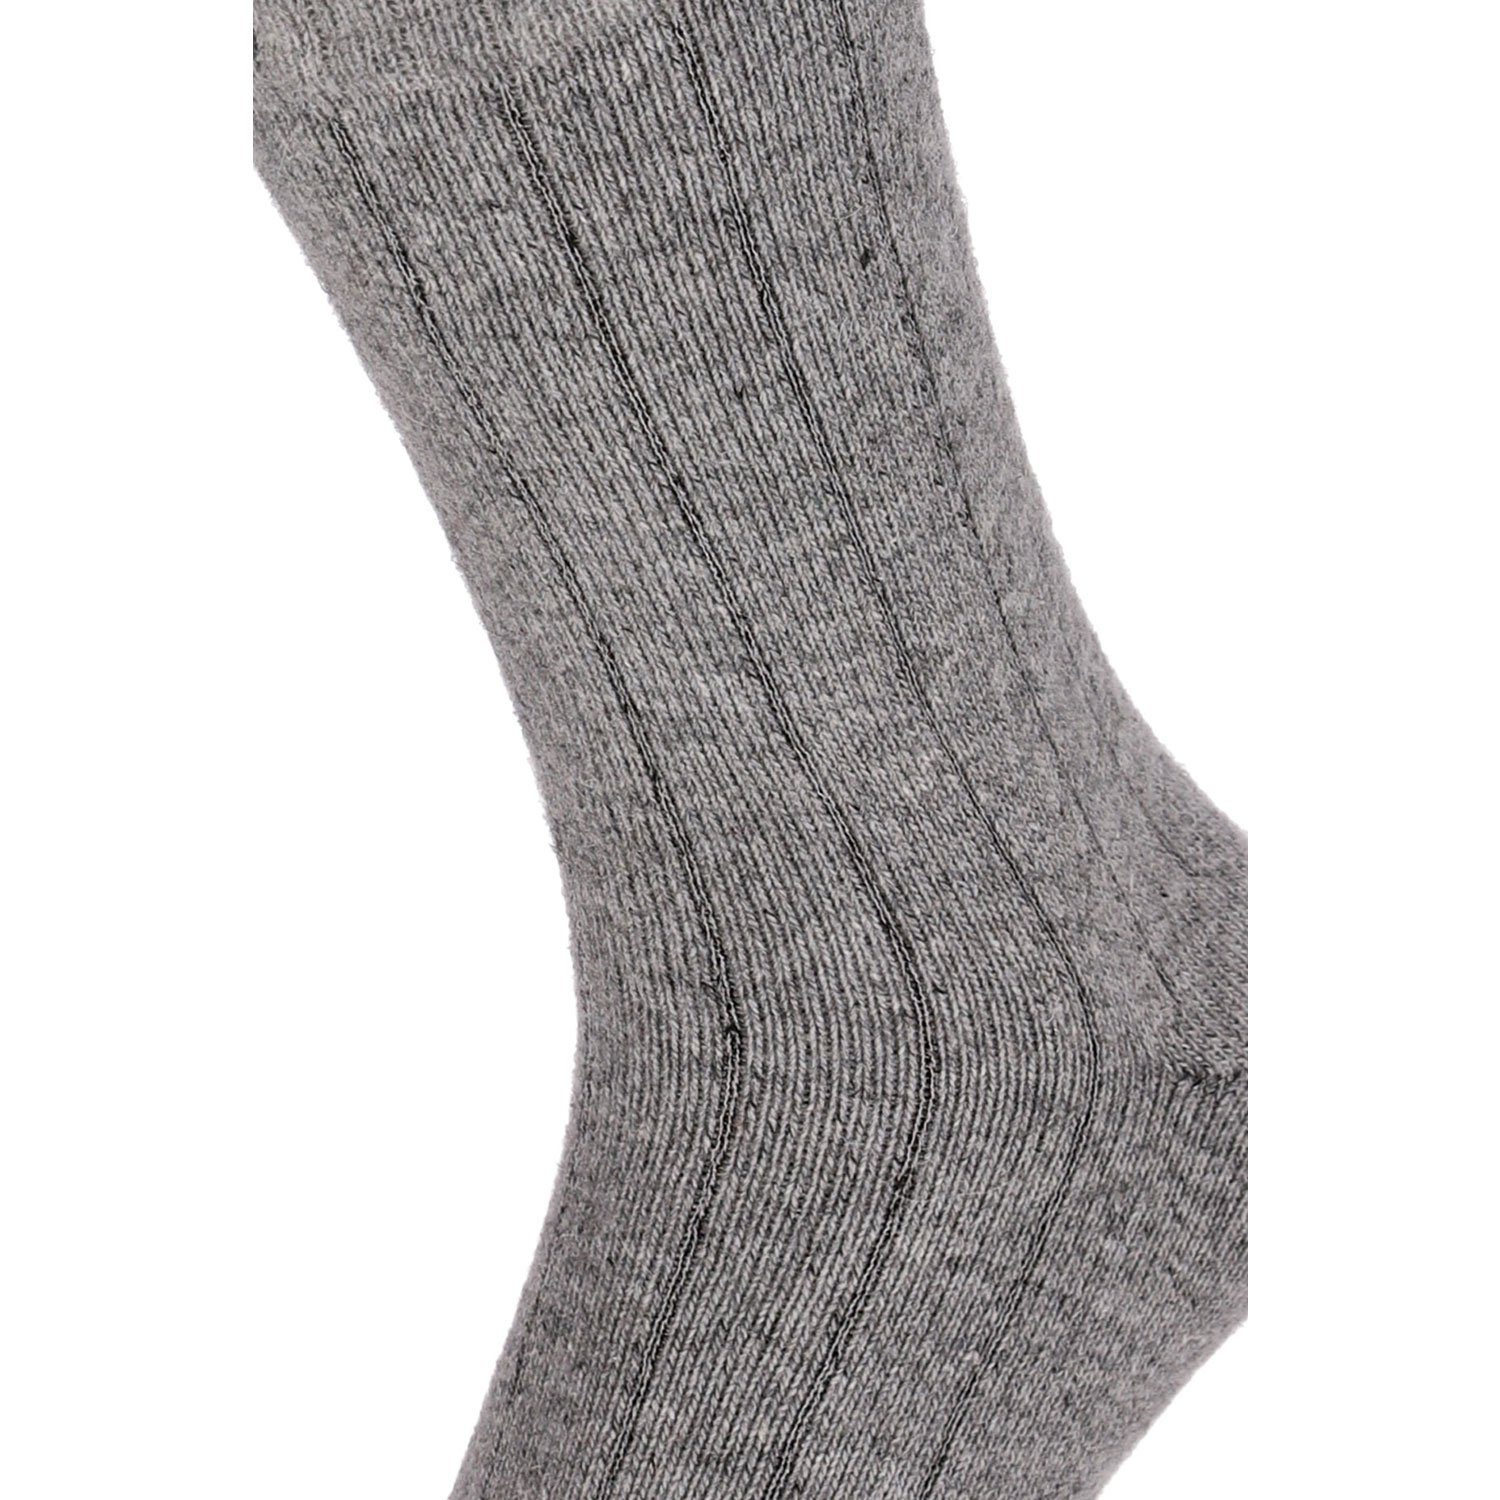 Herren Winter 2 Soft Extra Strümpfe Warm Paar Merino Wolle Chili Damen Super Lifestyle Socken